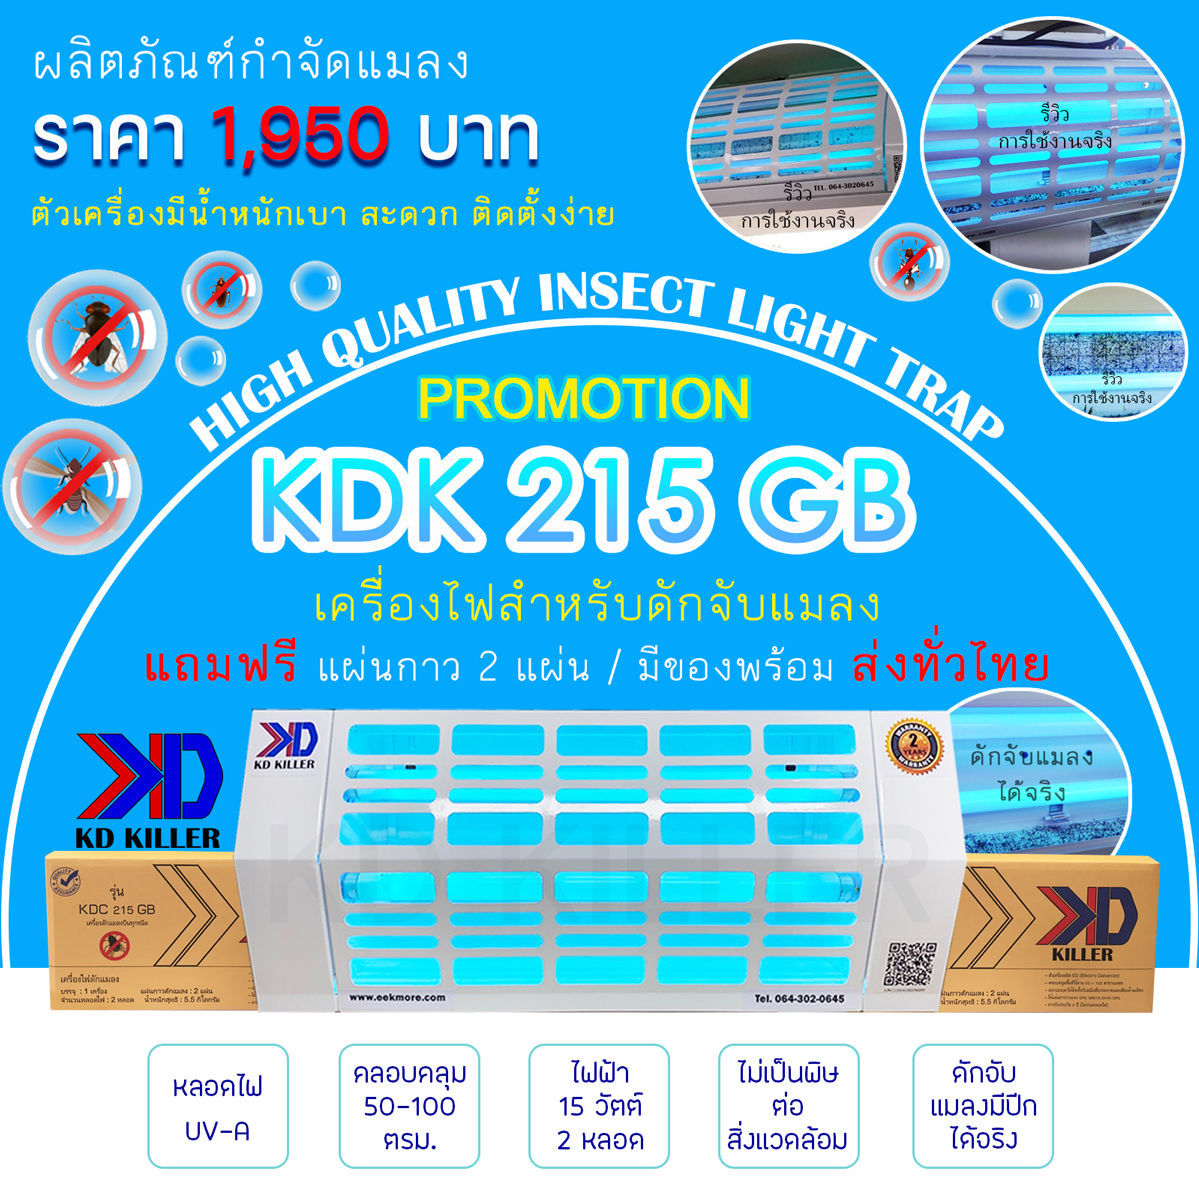 ้เครื่องไฟดักแมลง ุ่น KDK 215 GBโคมไฟฟ้าล่อแมลง หมดปัญหาแมลงกวนใจ - ตัวเครื่องแข็งแรง ทนทาน- ติดตั้งง่าย สะดวกต่อการเคลื่อนย้าย- ดักจับแมลงได้จริง- รับประกันสินค้า 2 ปี- แถมฟรี แผ่นกาว 1 กล่อง